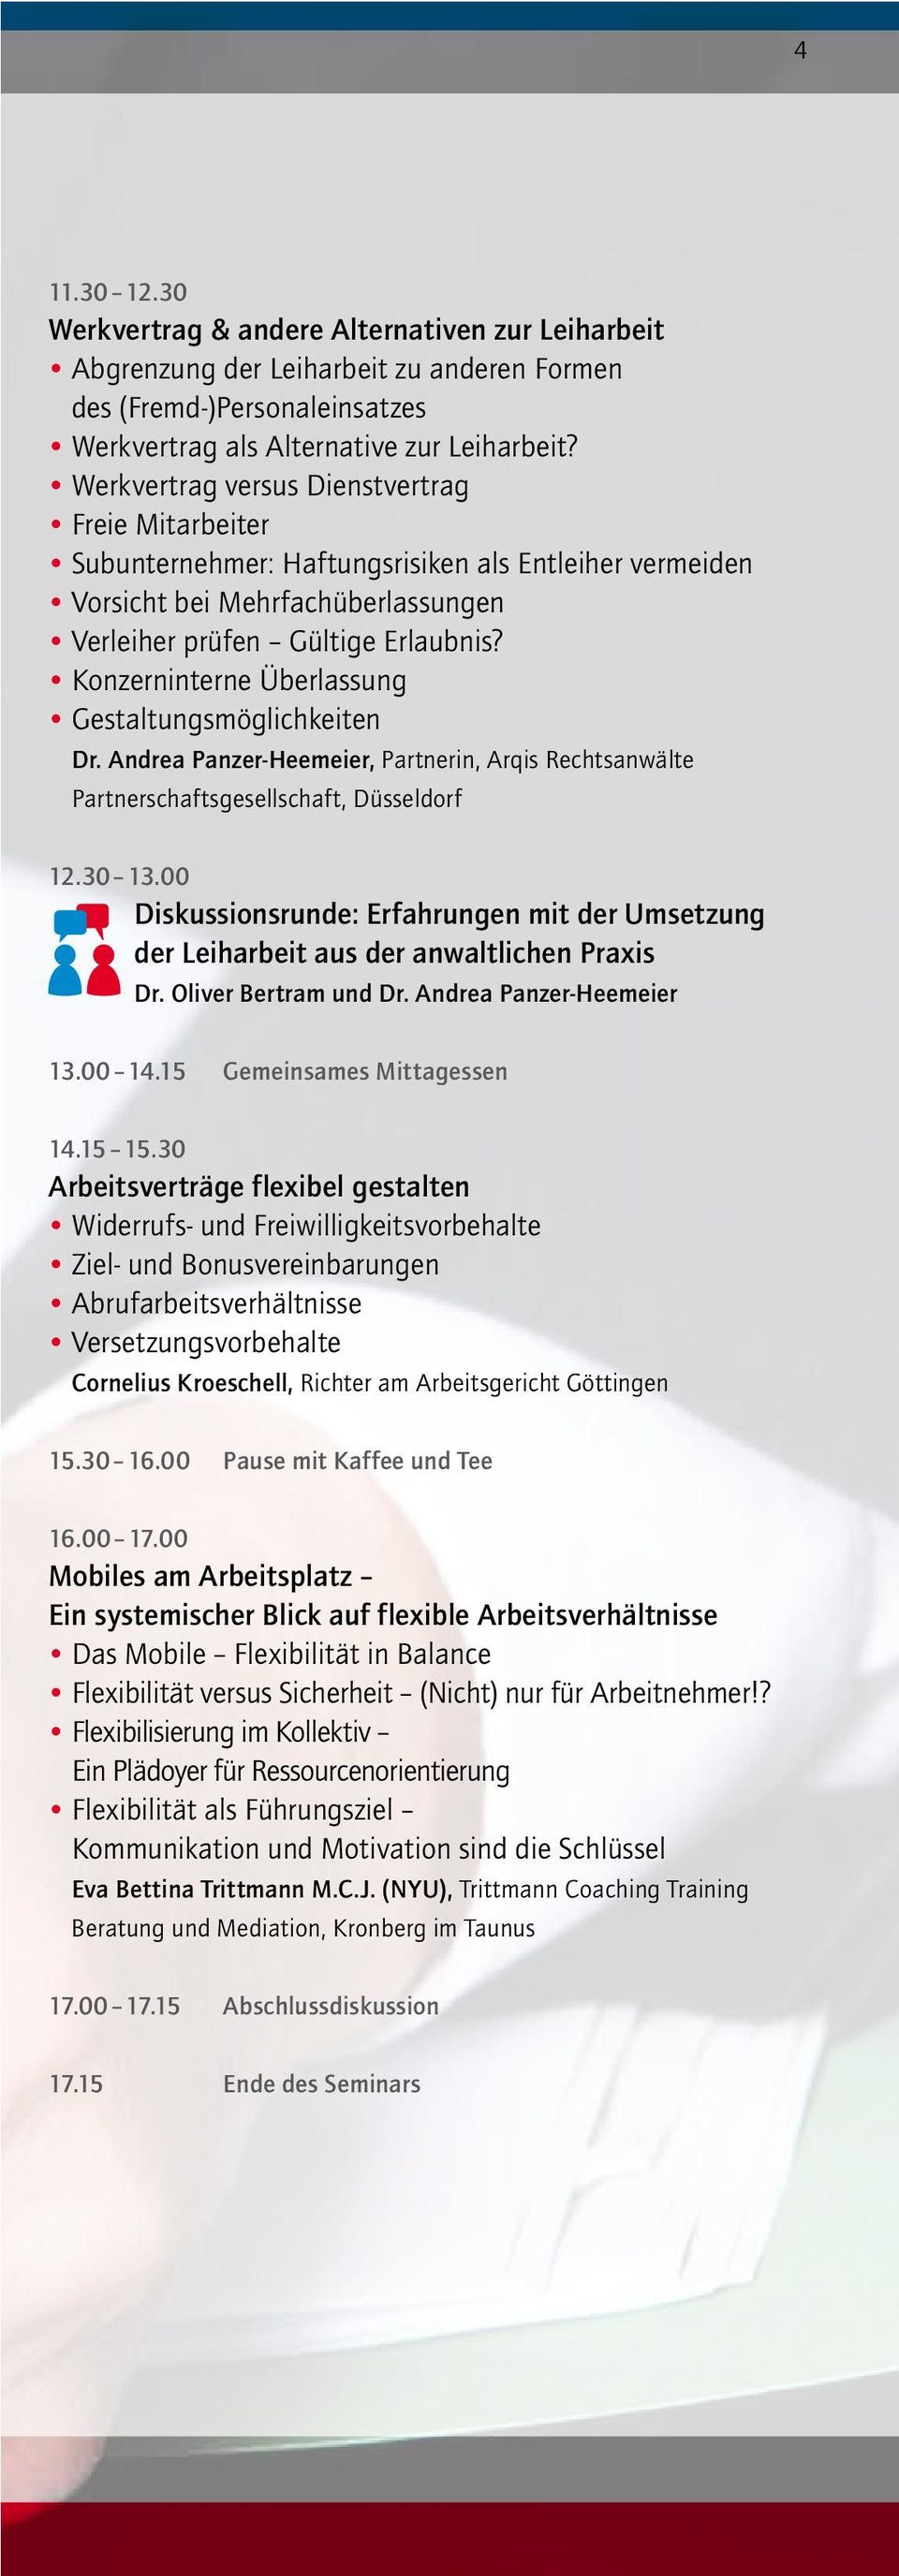 Konzerninterne Überlassung Gestaltungsmöglichkeiten Dr. Andrea Panzer-Heemeier, Partnerin, Arqis Rechtsanwälte Partnerschaftsgesellschaft, Düsseldorf 12.30 13.